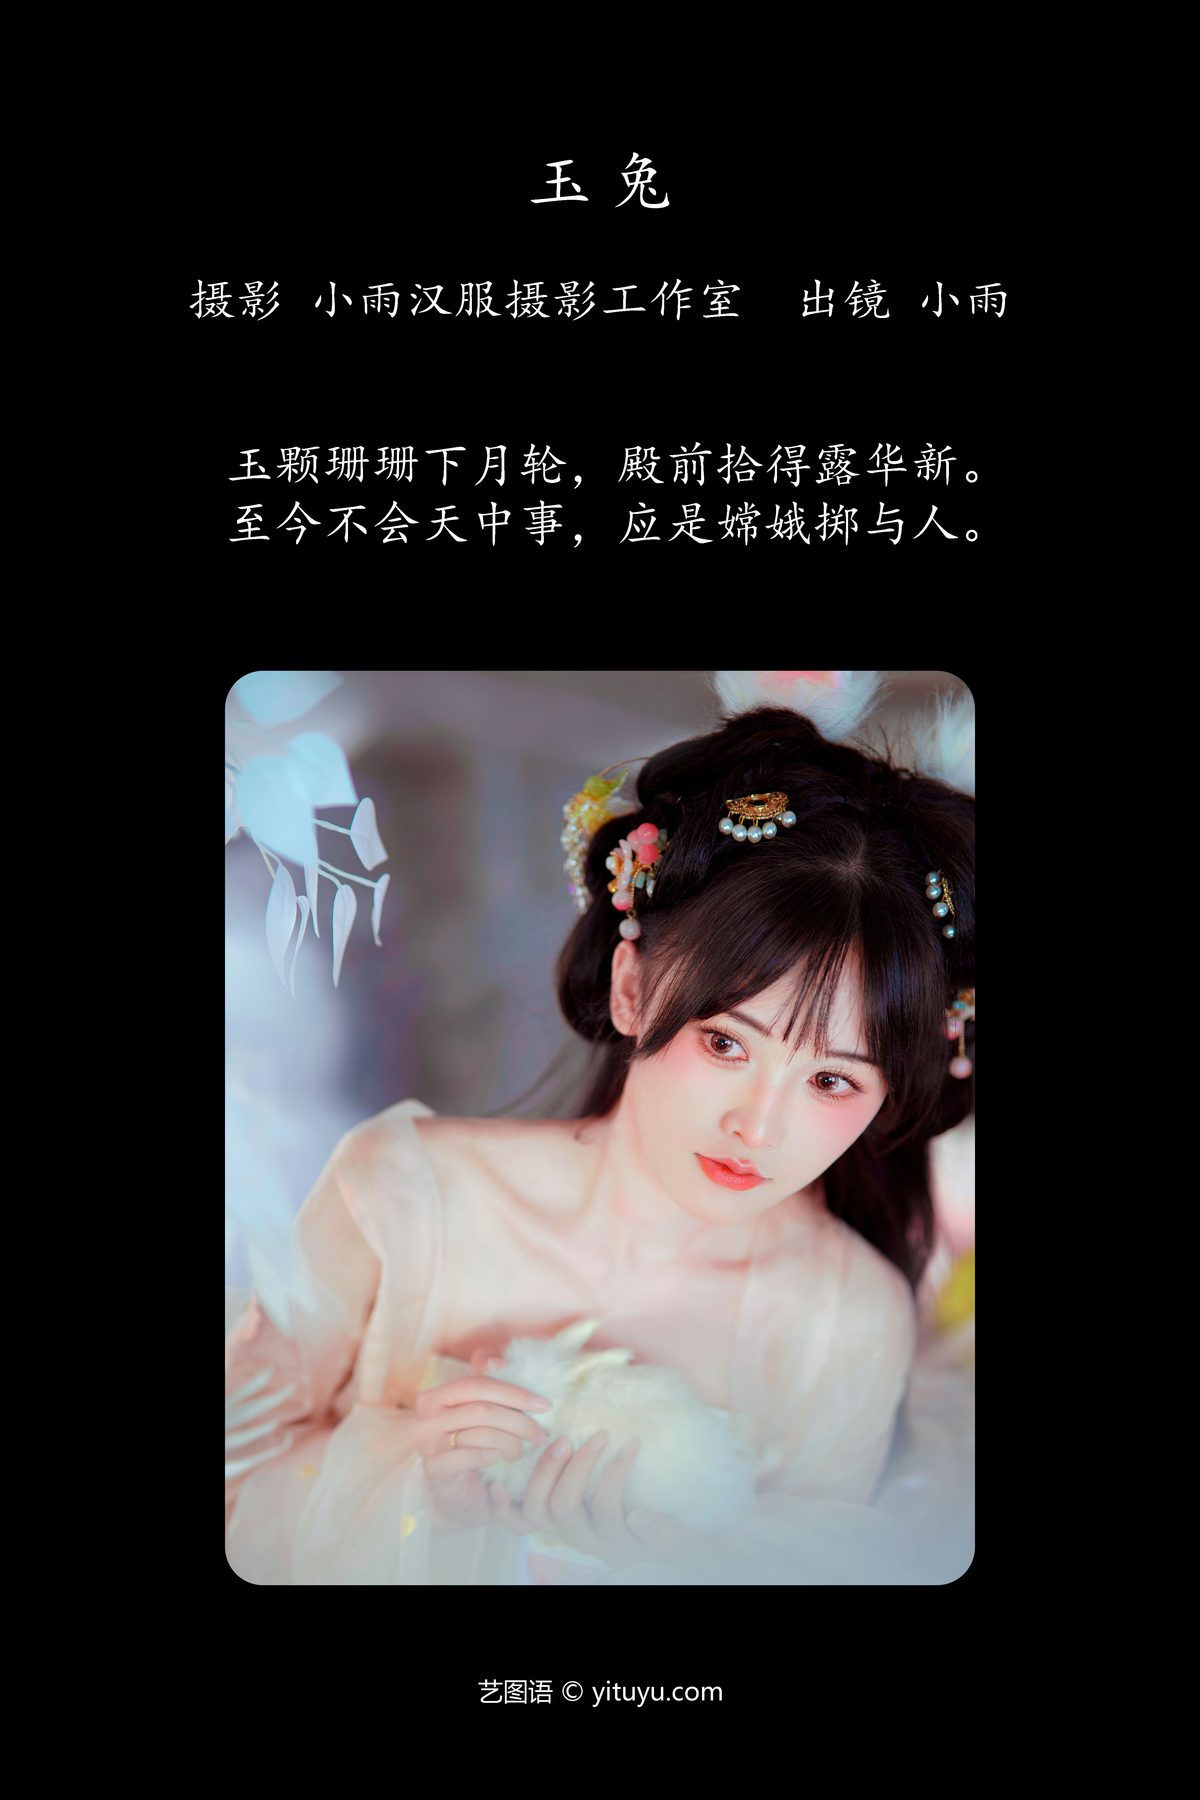 YiTuYu艺图语 Vol 5626 Xiao Yu 0001 5487452625.jpg